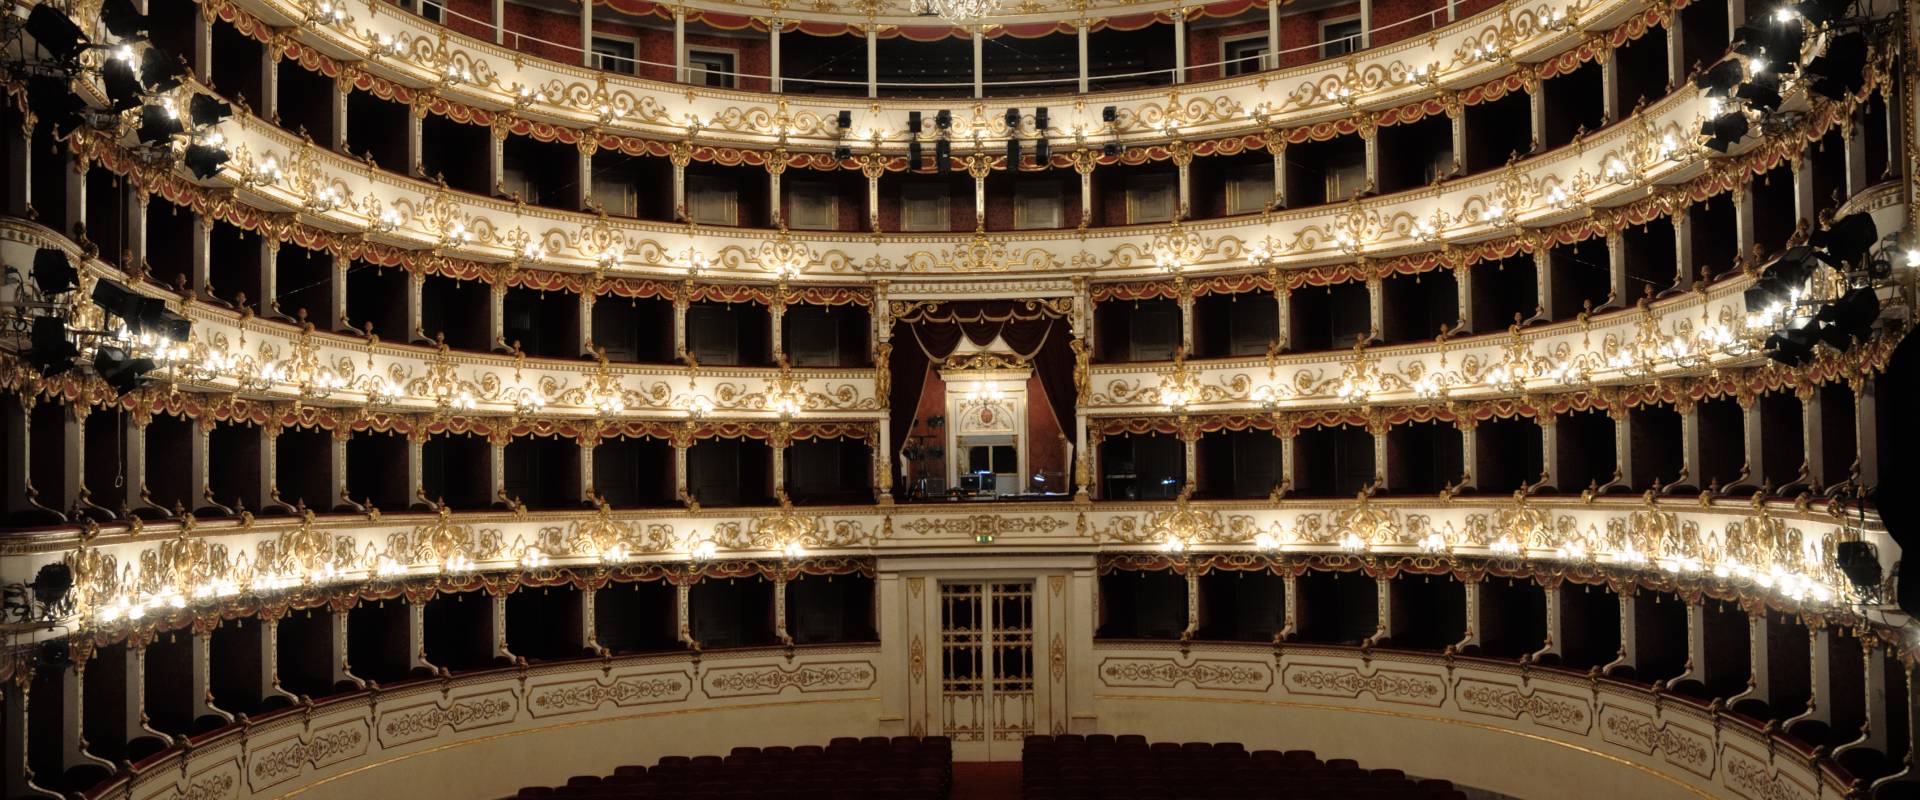 Teatro Municipale Romolo Valli Reggio Emilia 03 photo by Lorenzo Gaudenzi